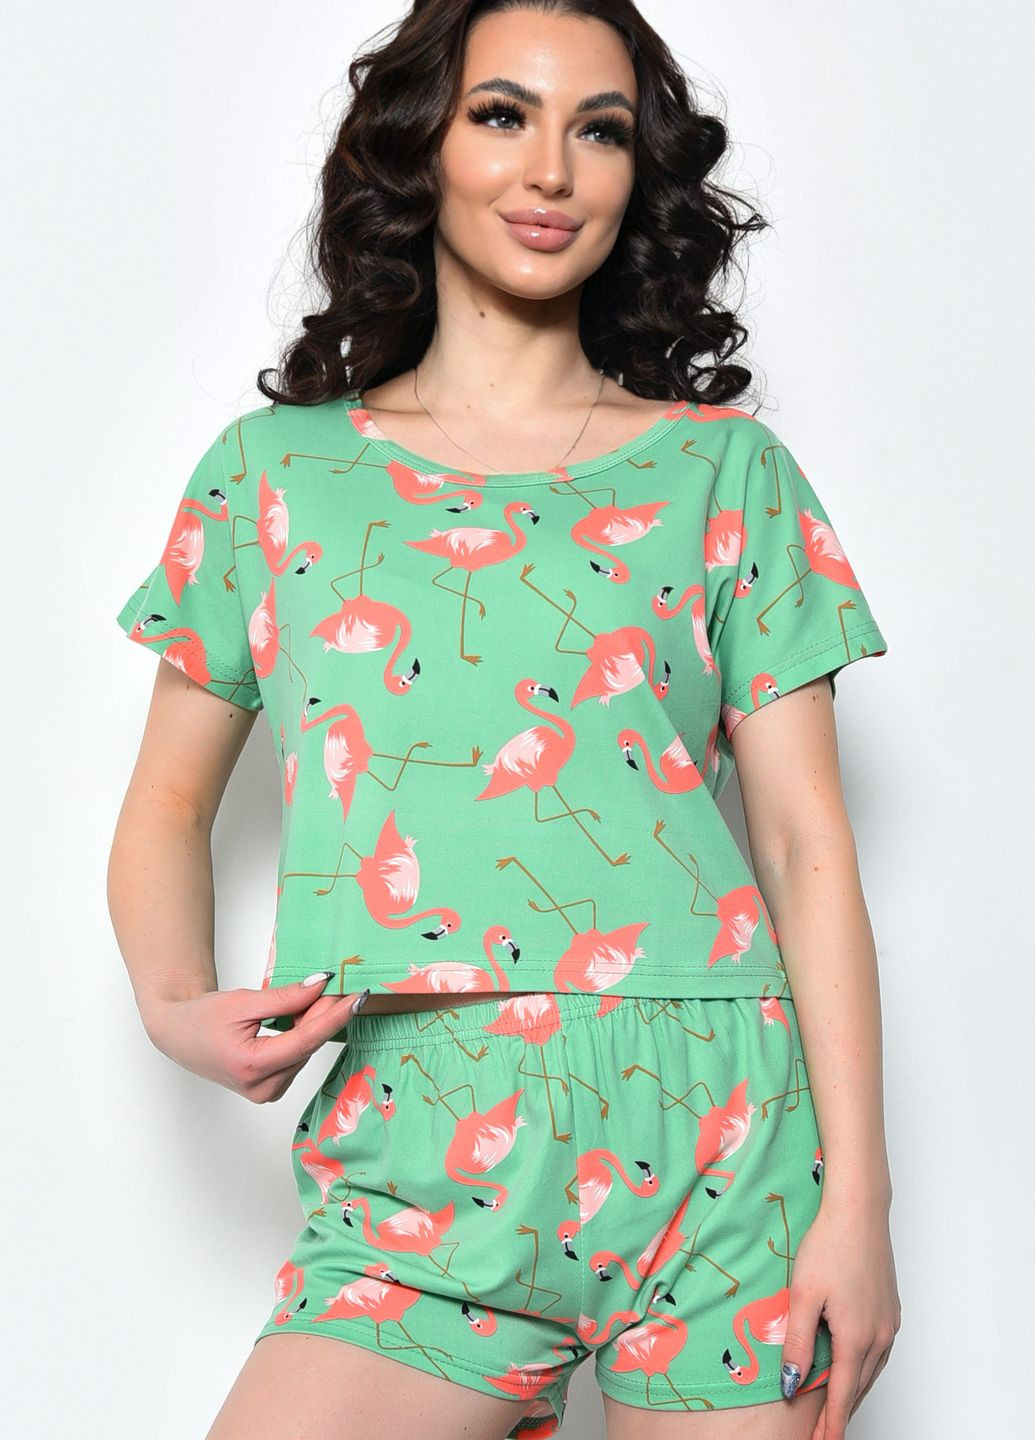 Салатова всесезон піжама жіноча літня шорти+футболка салатового кольору футболка + шорти Let's Shop